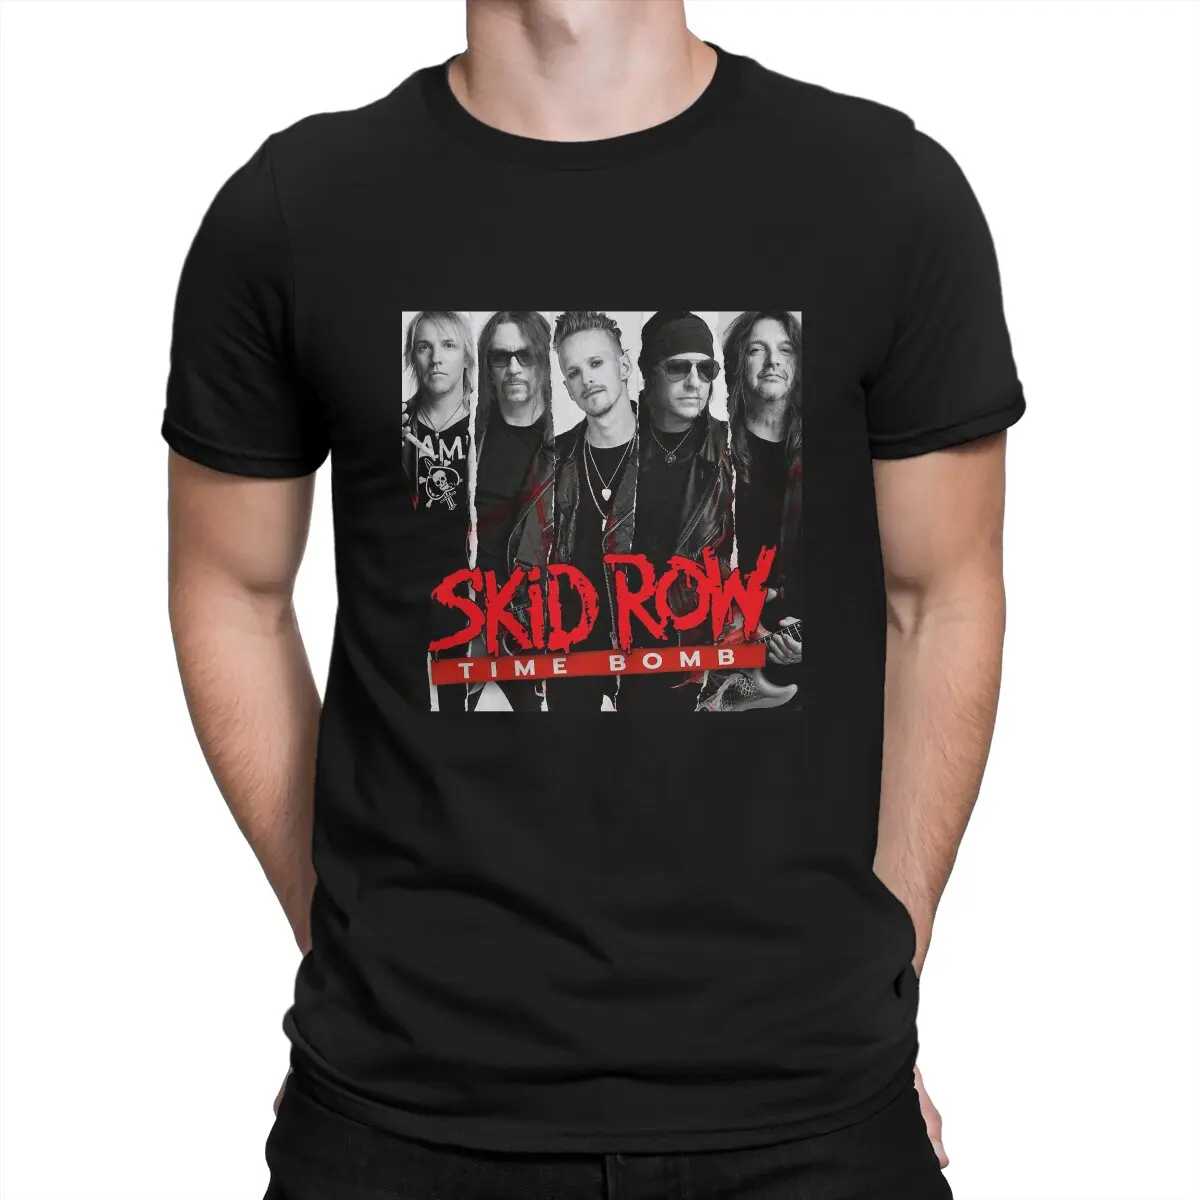 Skid Row Men's TShirt Time Bomb Fashion T Shirt Graphic Streetwear New Trend